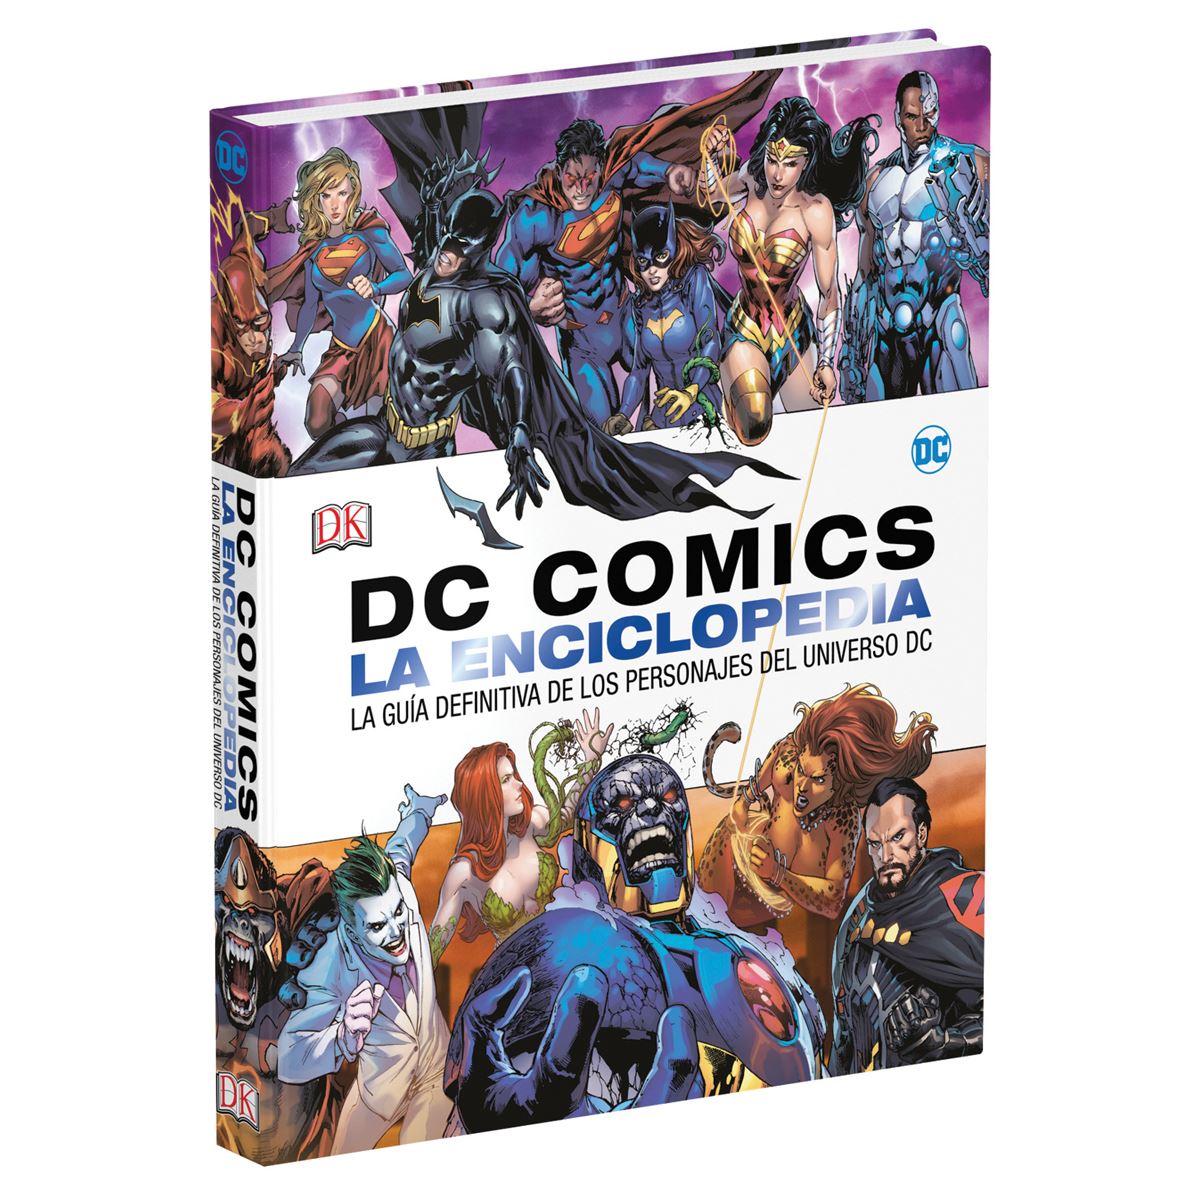 DC comics la enciclopedia